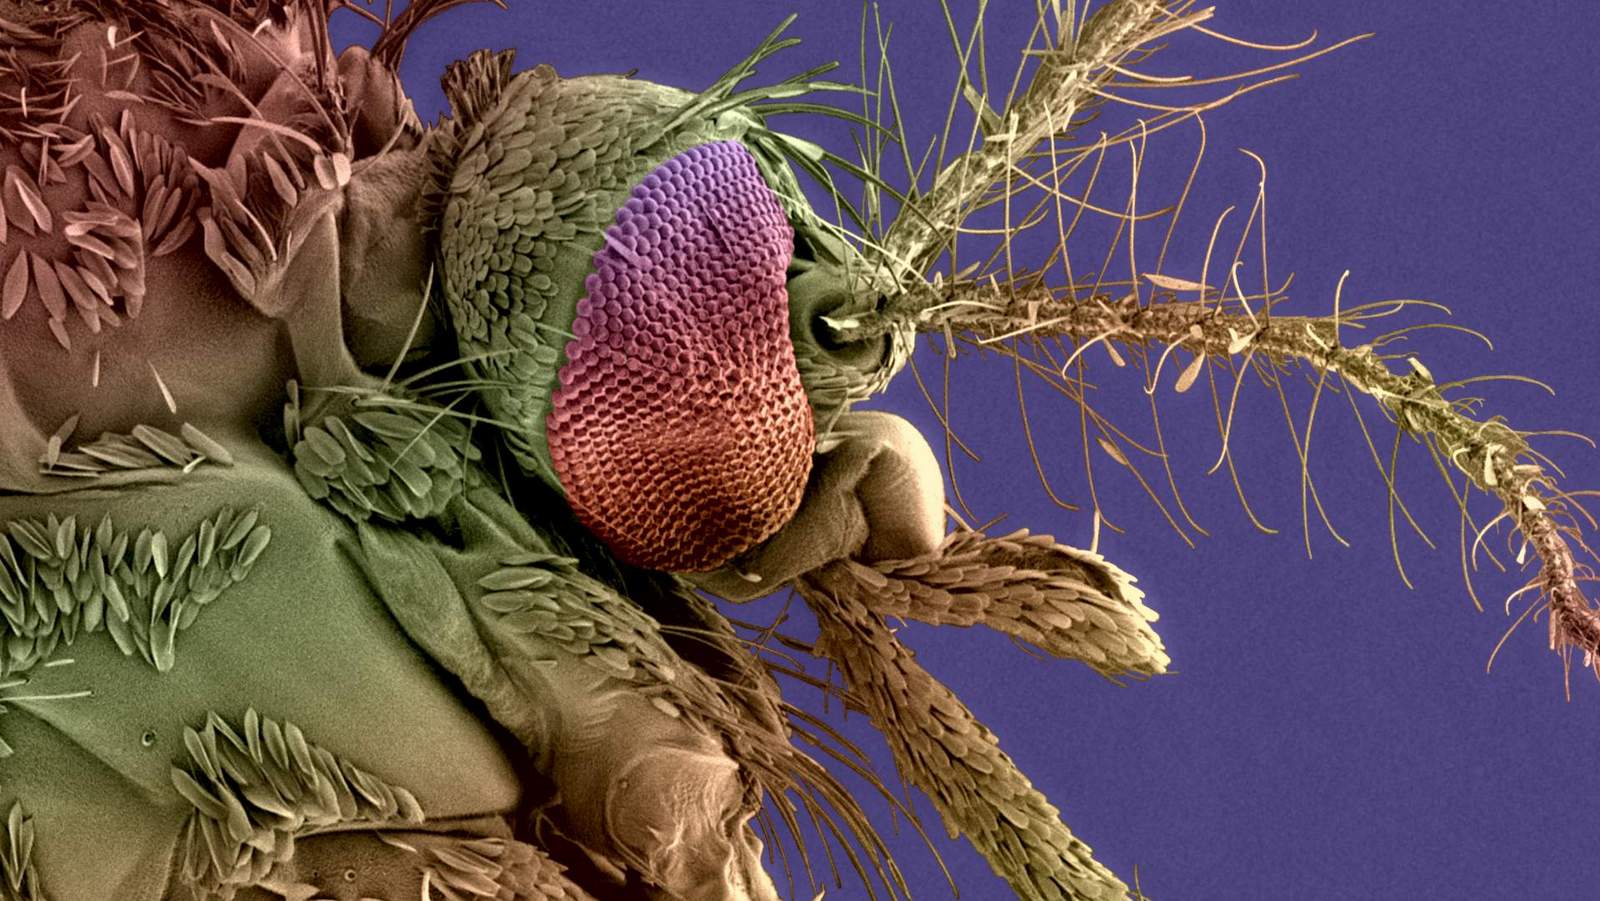 Tête de moustique femelle Aedes albopictus, vecteur du virus de la dengue et du chikungunya. Image acquise par microscopie électronique à balayage.